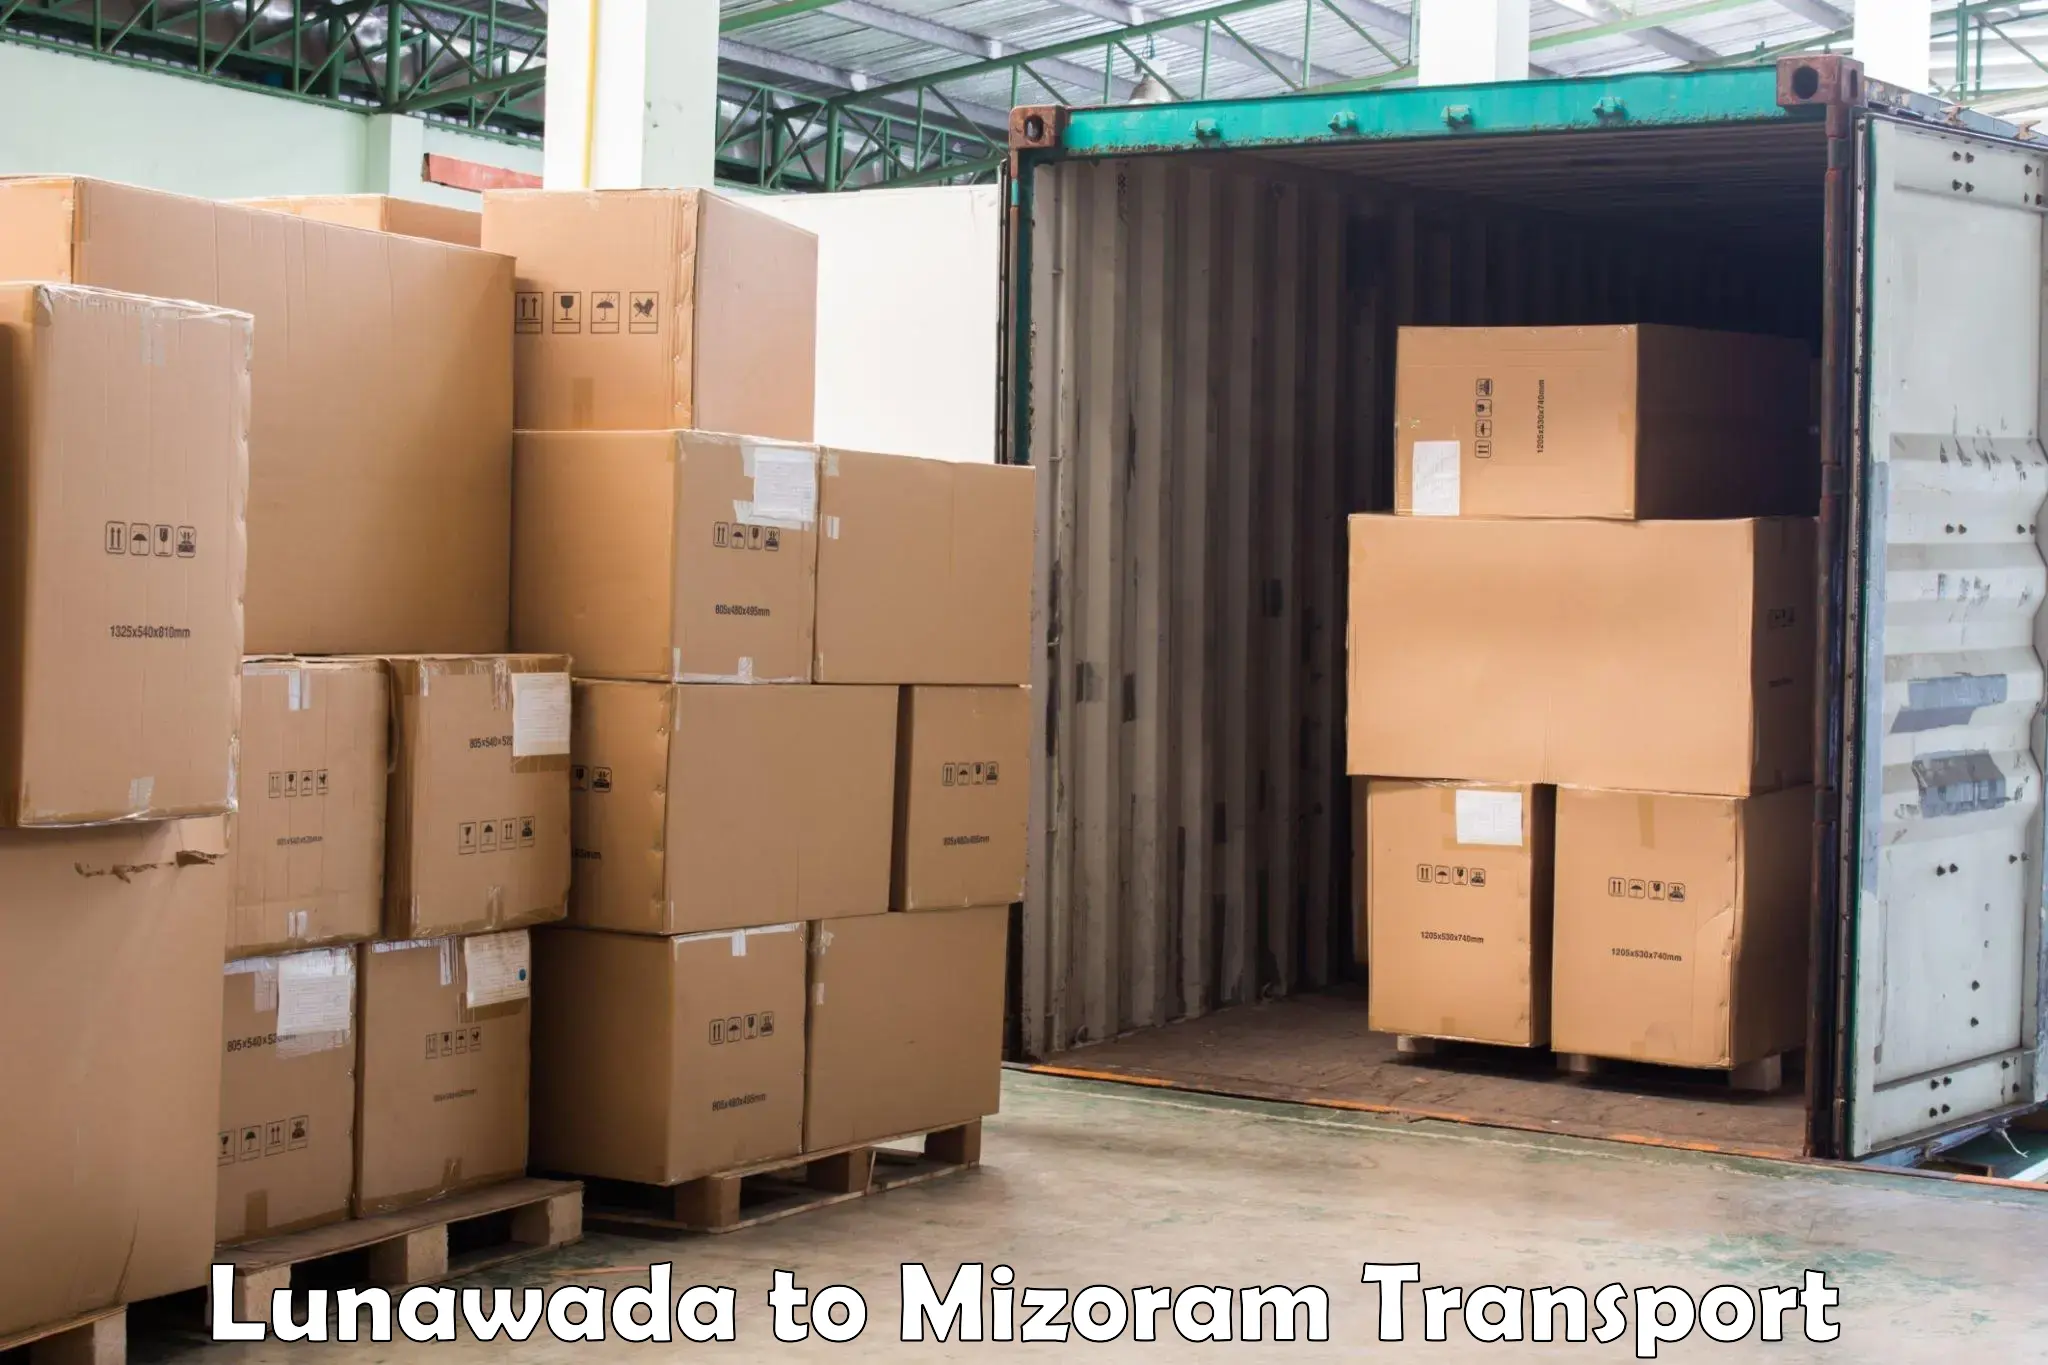 Furniture transport service in Lunawada to Mizoram